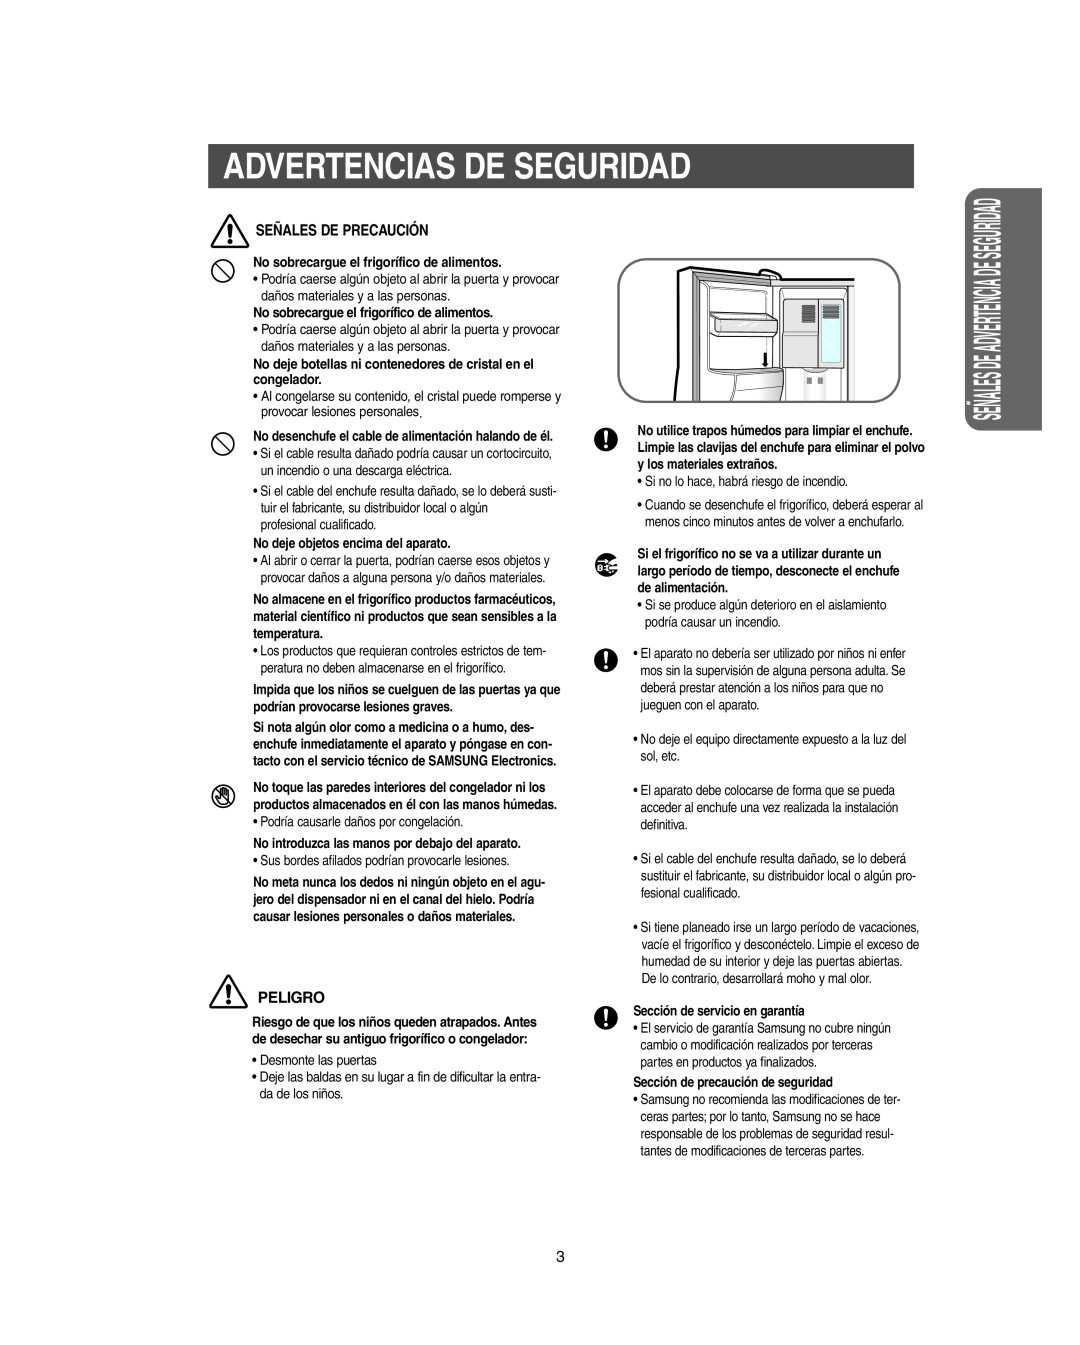 Samsung RS267B manual Señales De Precaución, Peligro, Advertencias De Seguridad, No sobrecargue el frigorífico de alimentos 